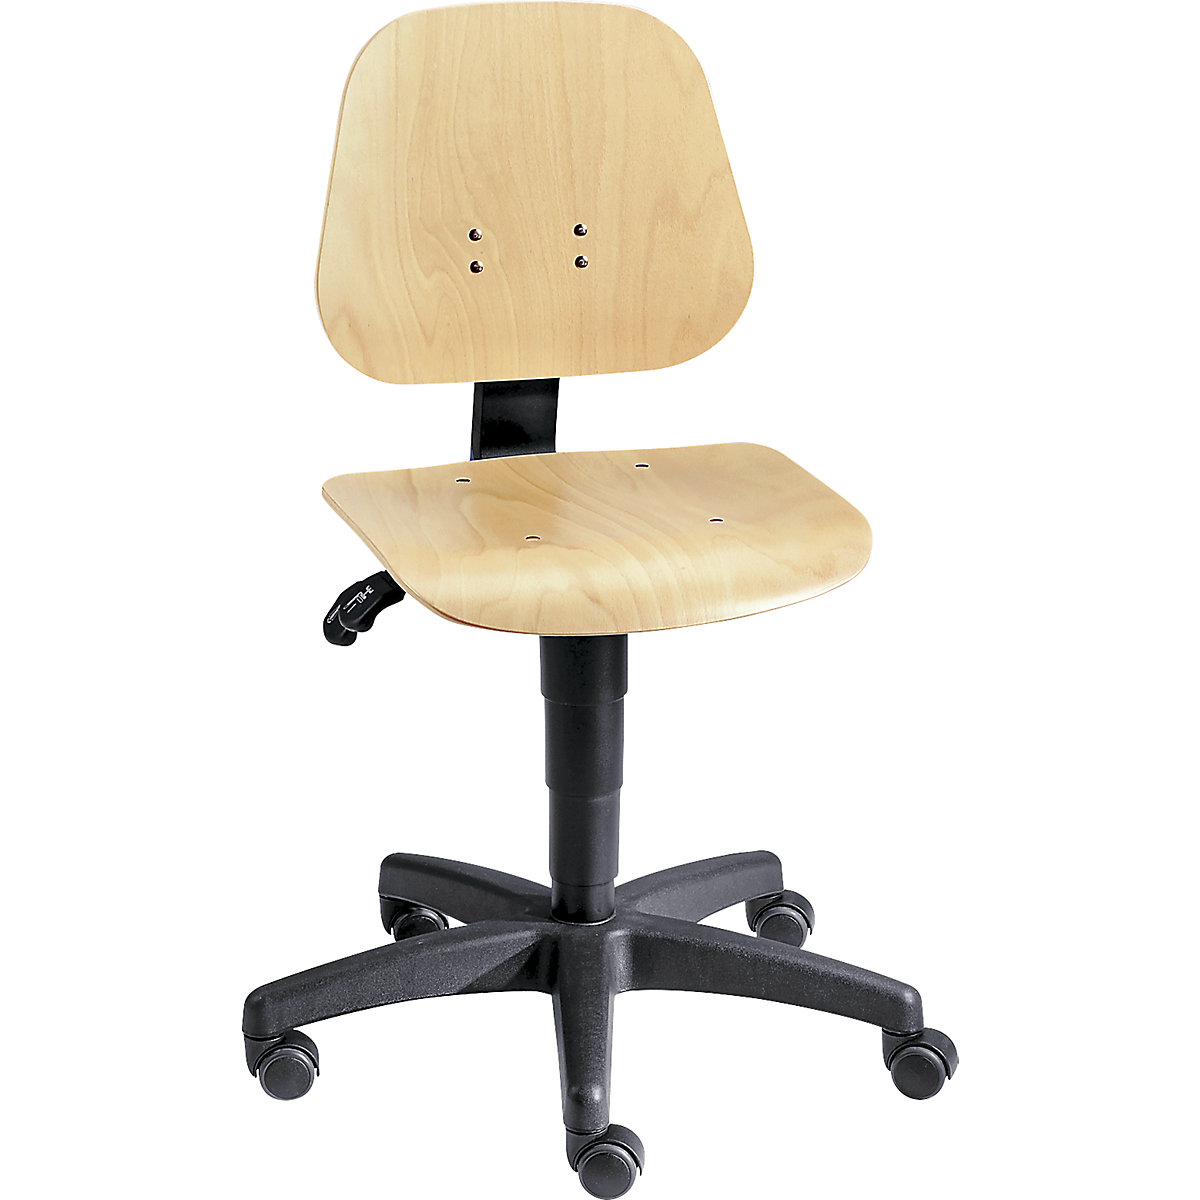 Pracovní otočná židle – bimos, s přestavováním výšky plynovým pístem, bukové vrstvené dřevo, s kolečky, od 3 ks-3